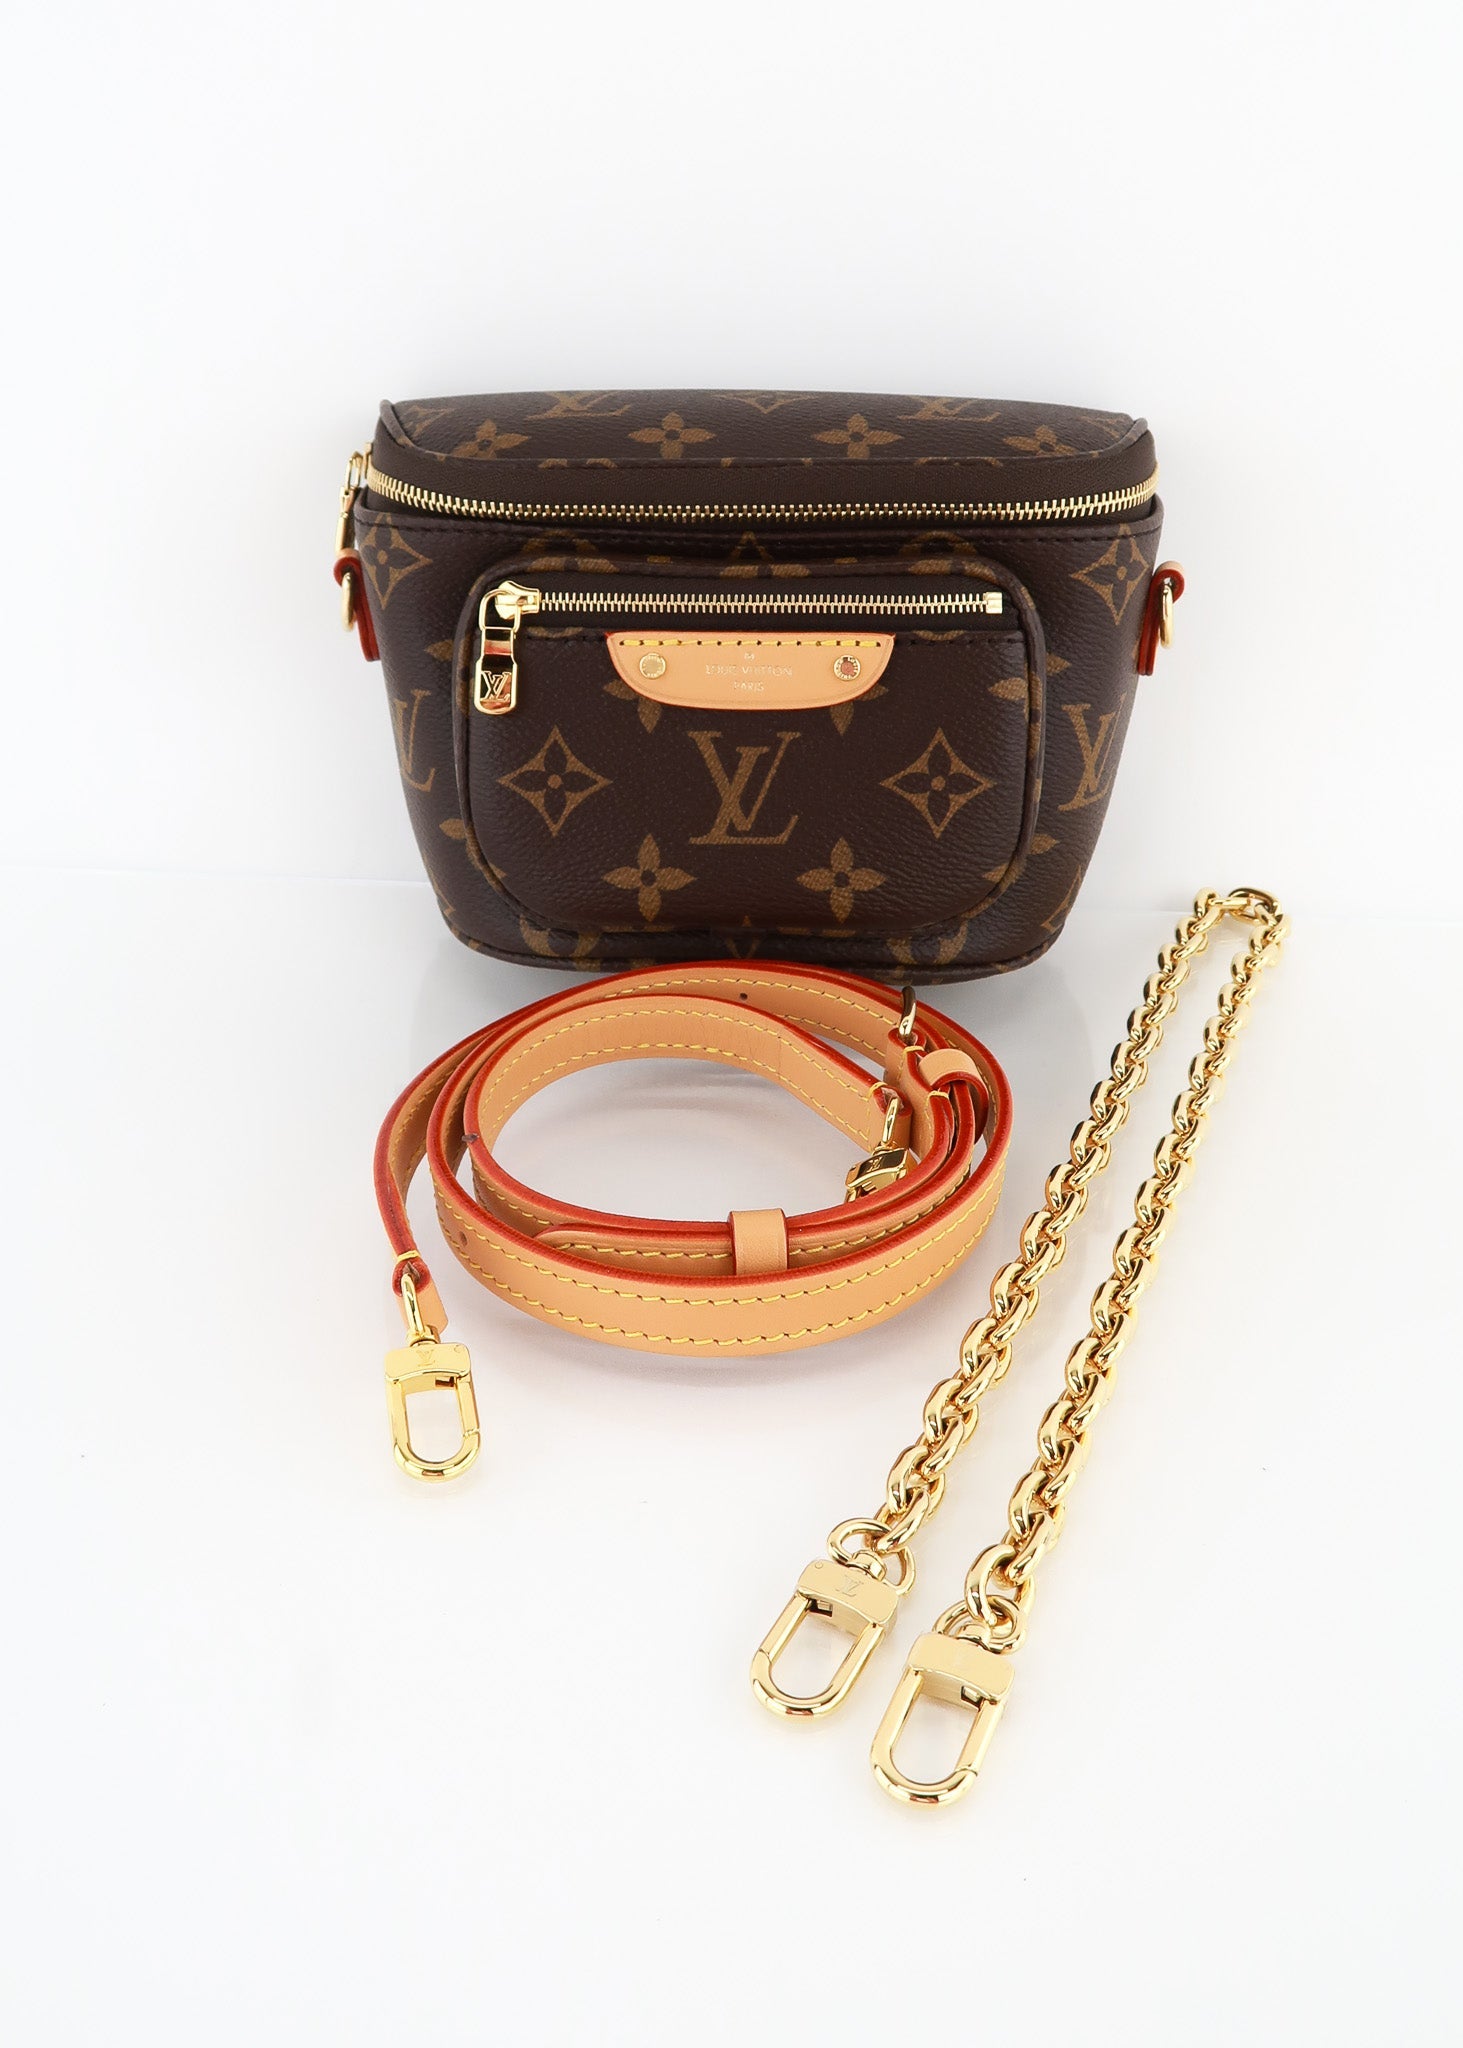 3 Ways to Wear the Louis Vuitton Monogram Bumbag